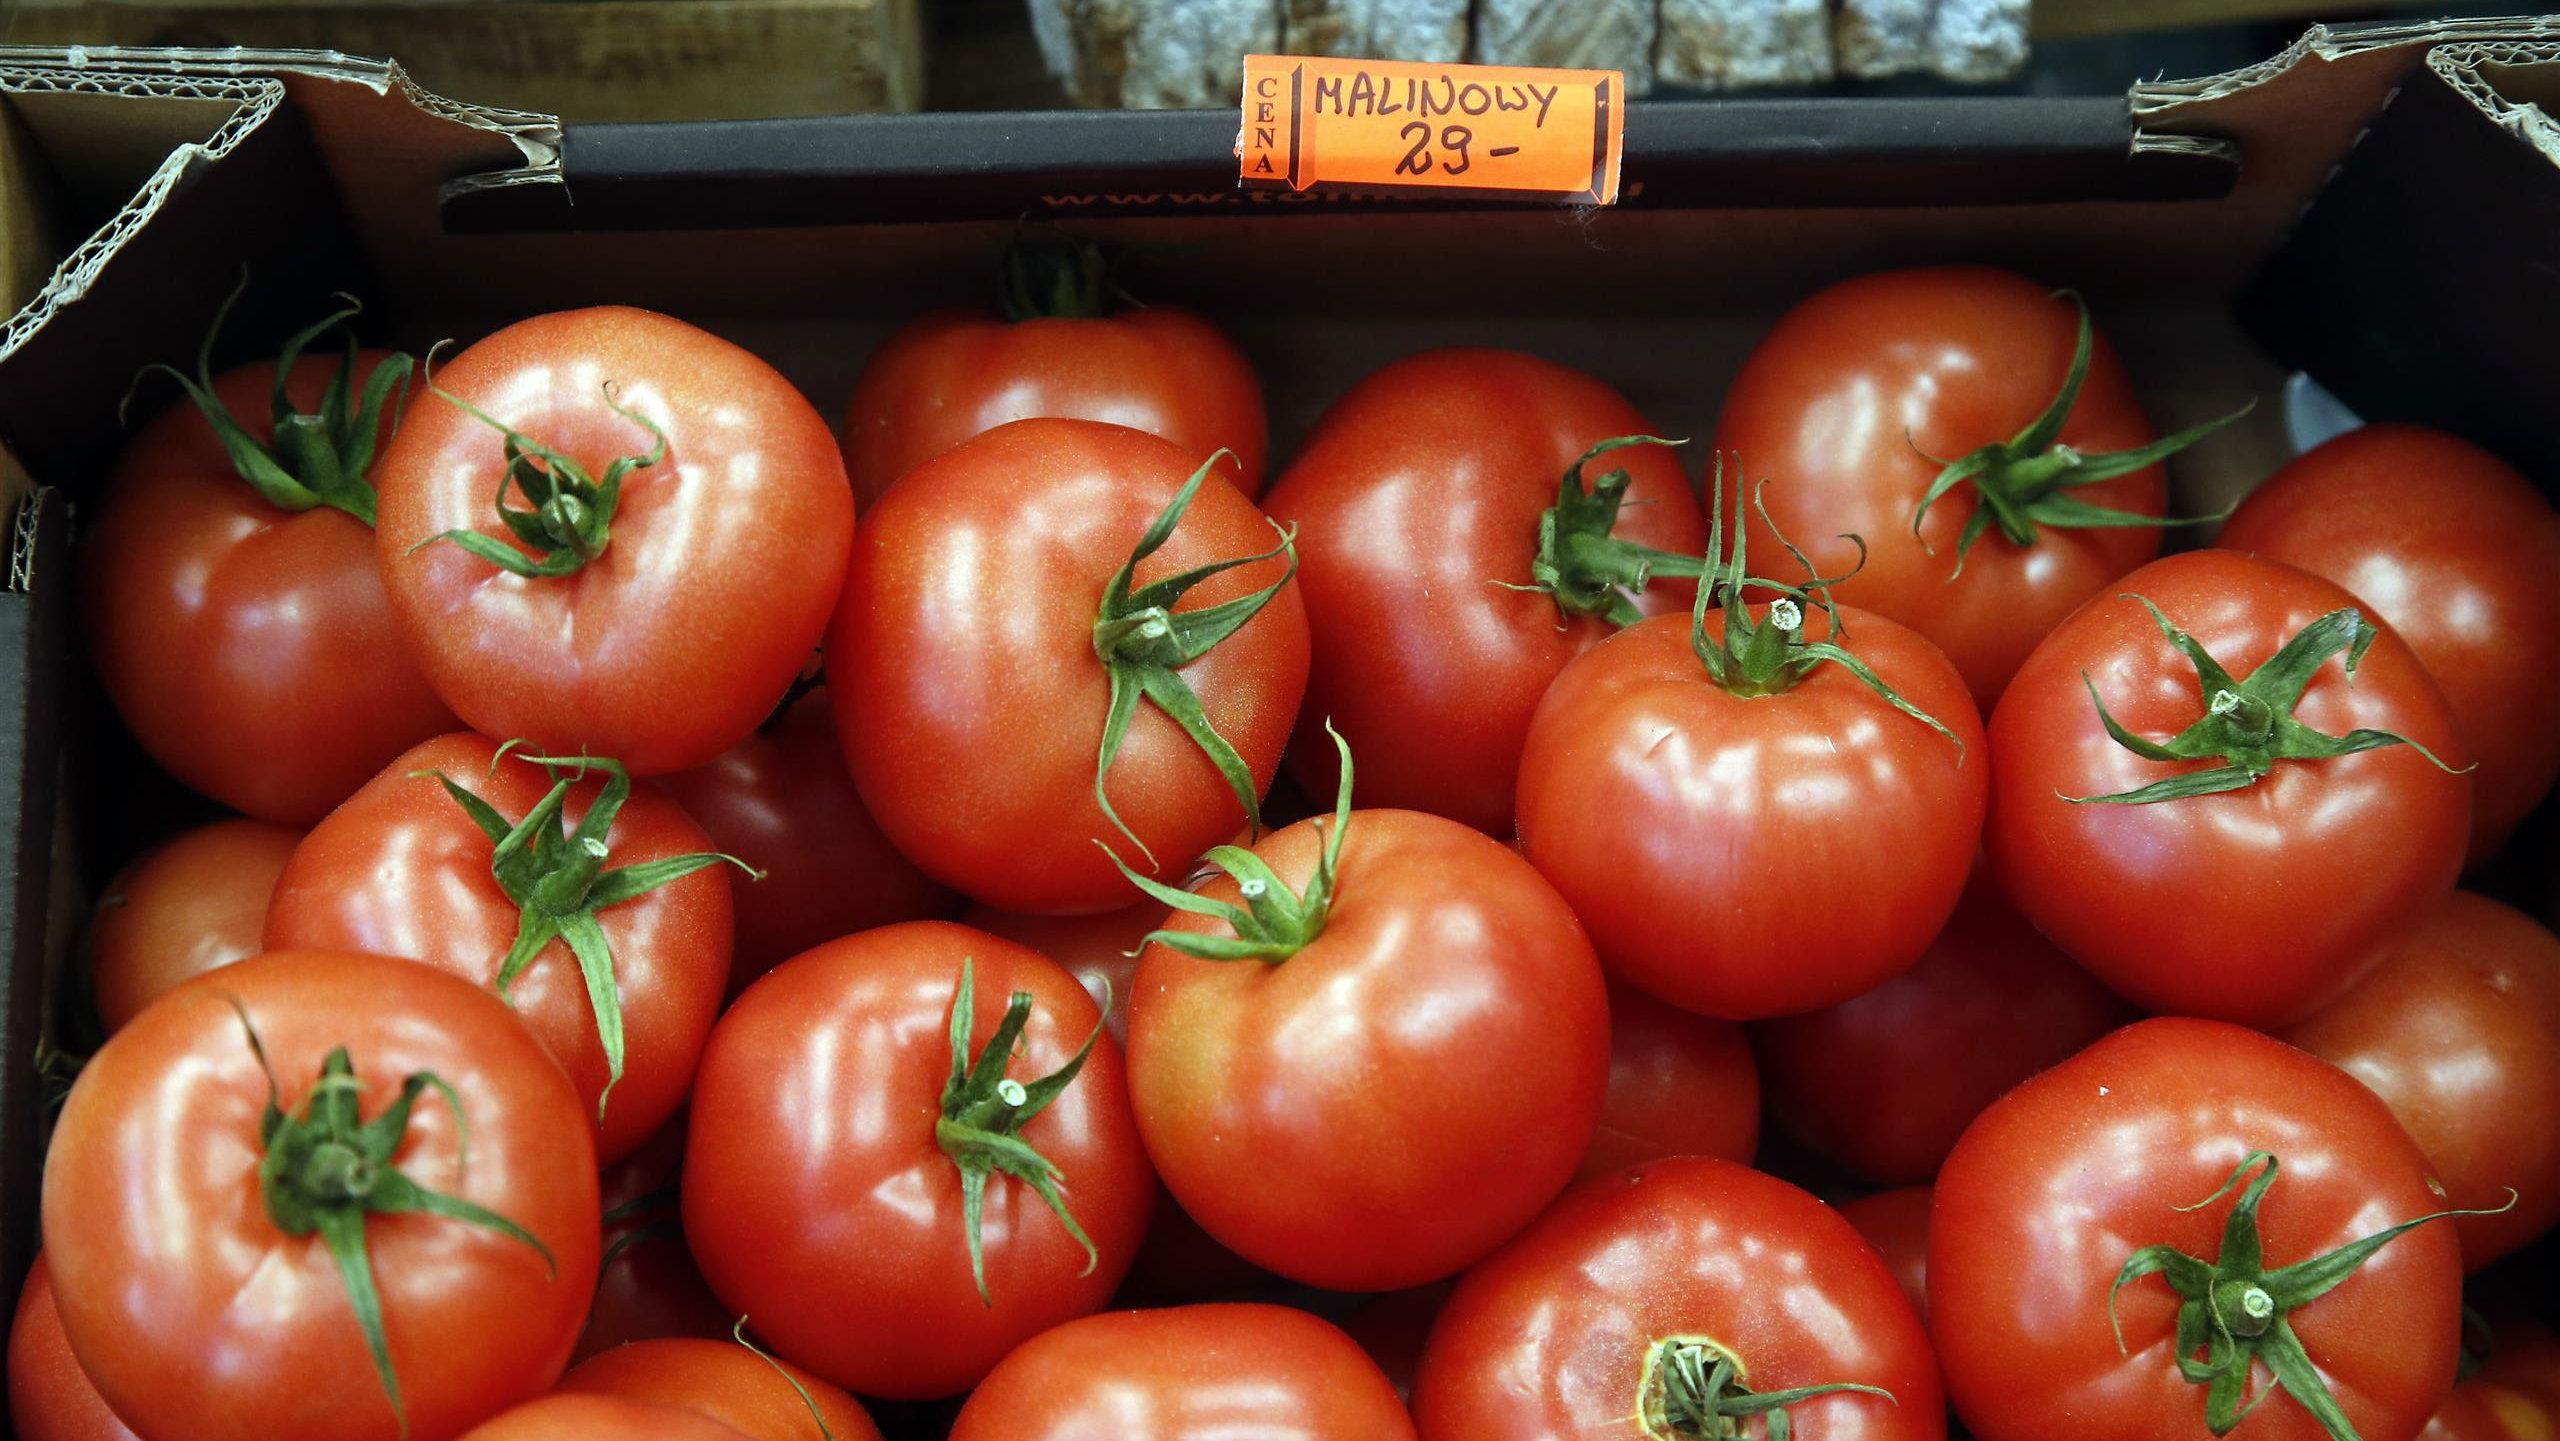 wzięli pod lupę pomidory z polskich marketów. zaskakujący wynik badań